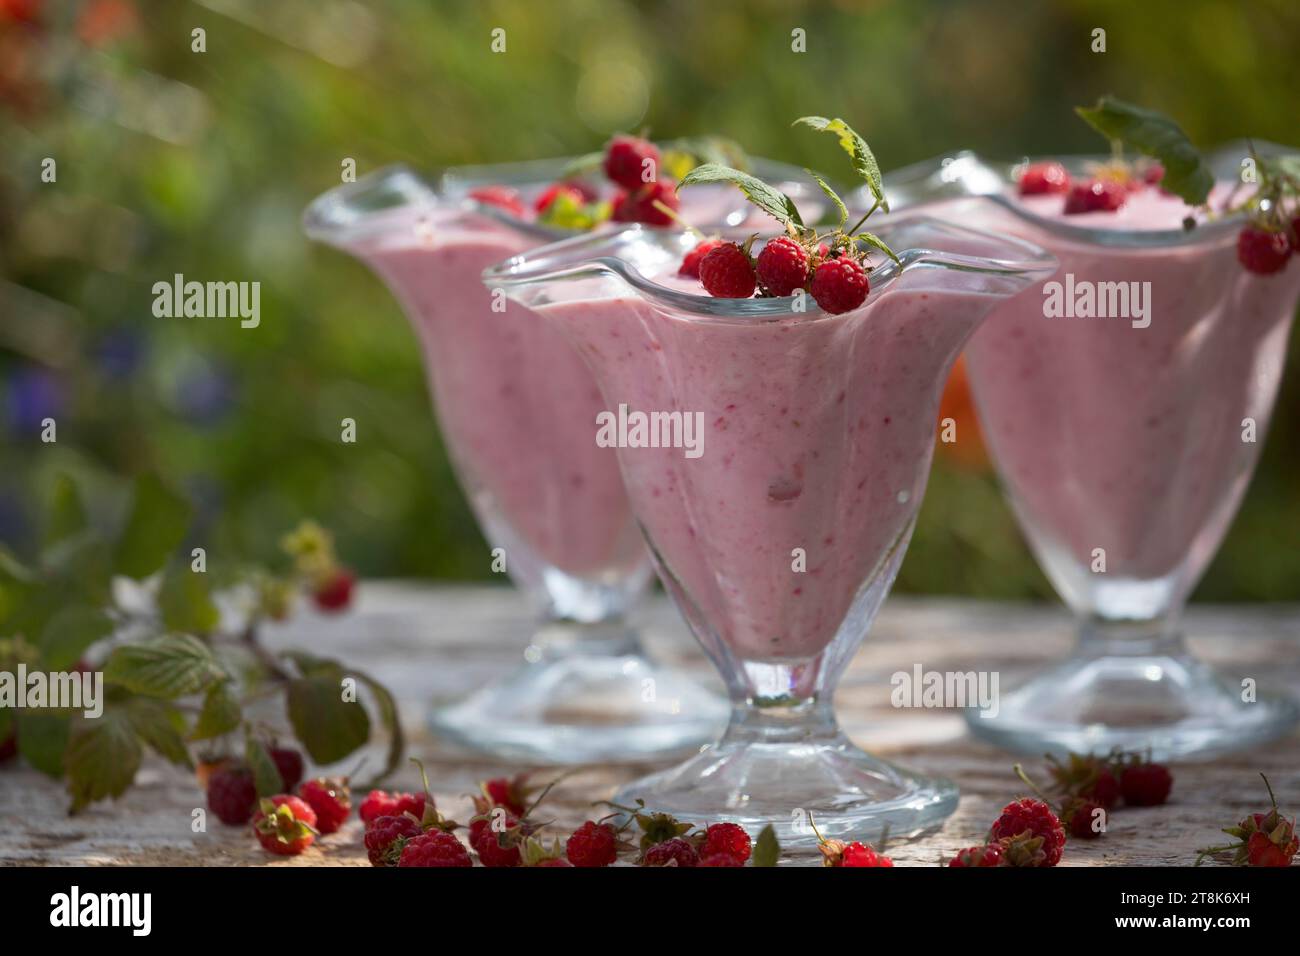 gelato morbido fatto da te, composto da yogurt, qvark e frutta, ghiaccio finito decorato con lamponi, foto della serie 4/4 Foto Stock